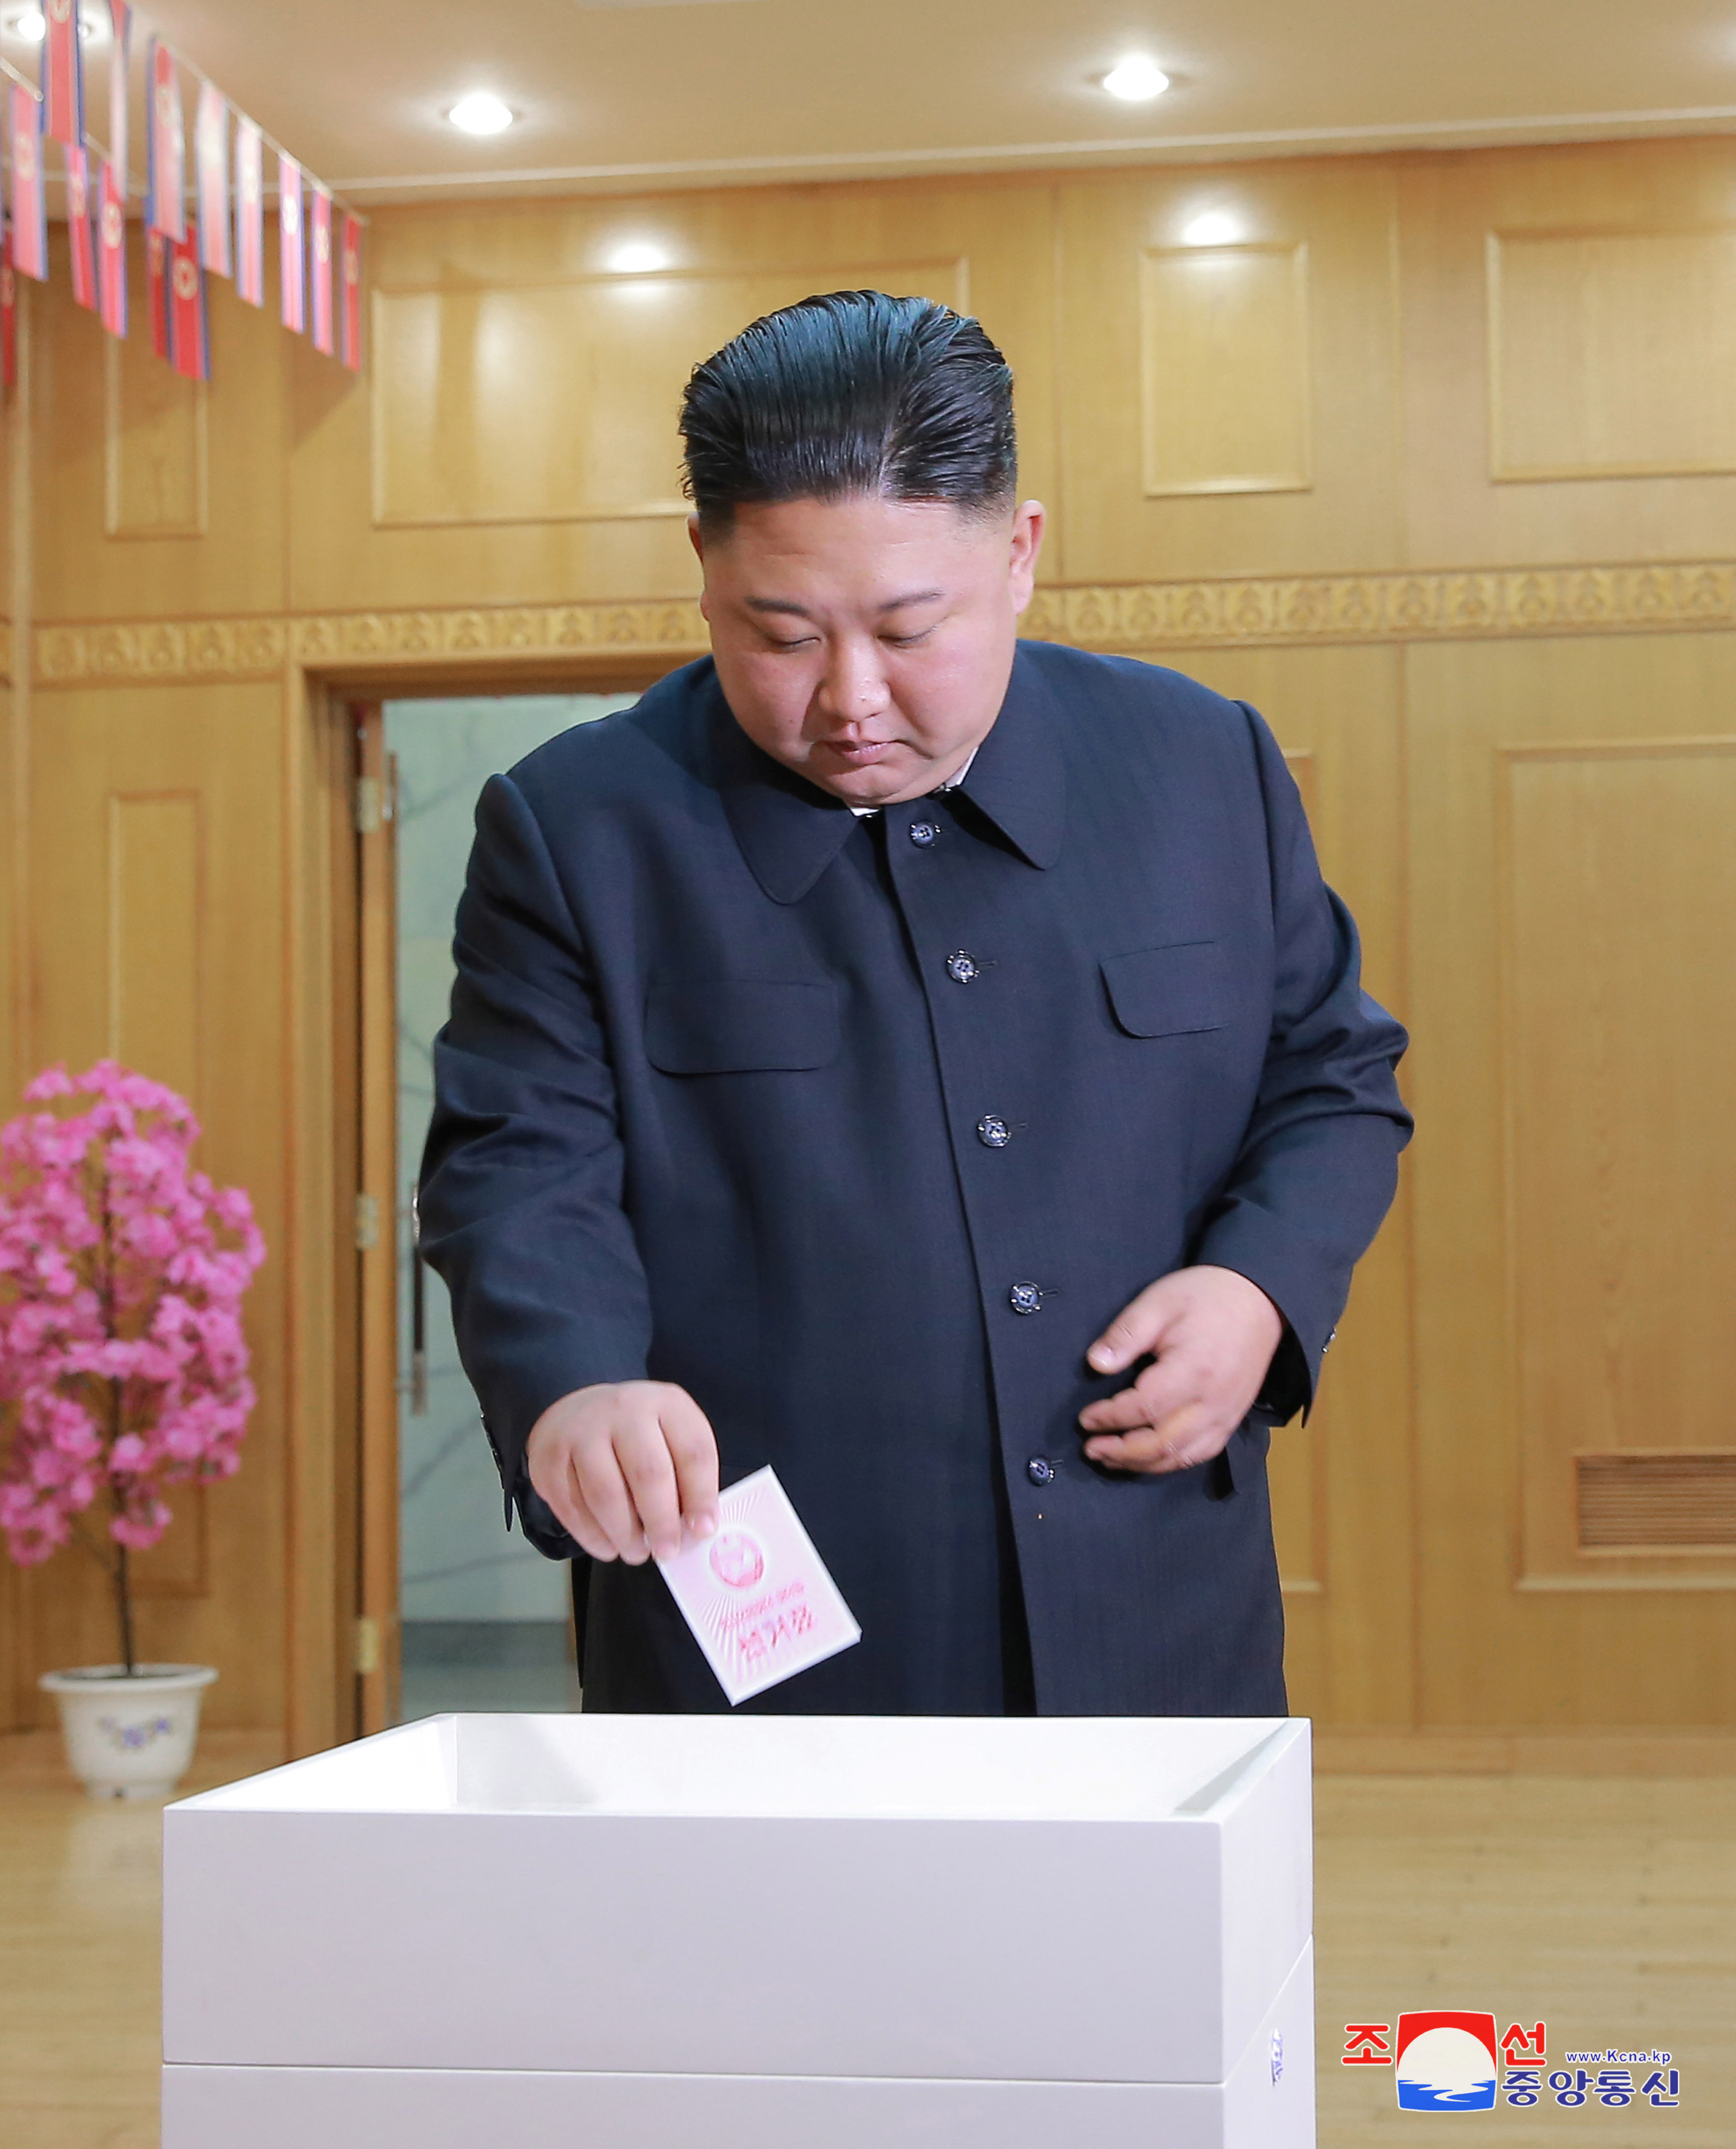 Ким Чен Ын пришёл отдать голос за свою партию